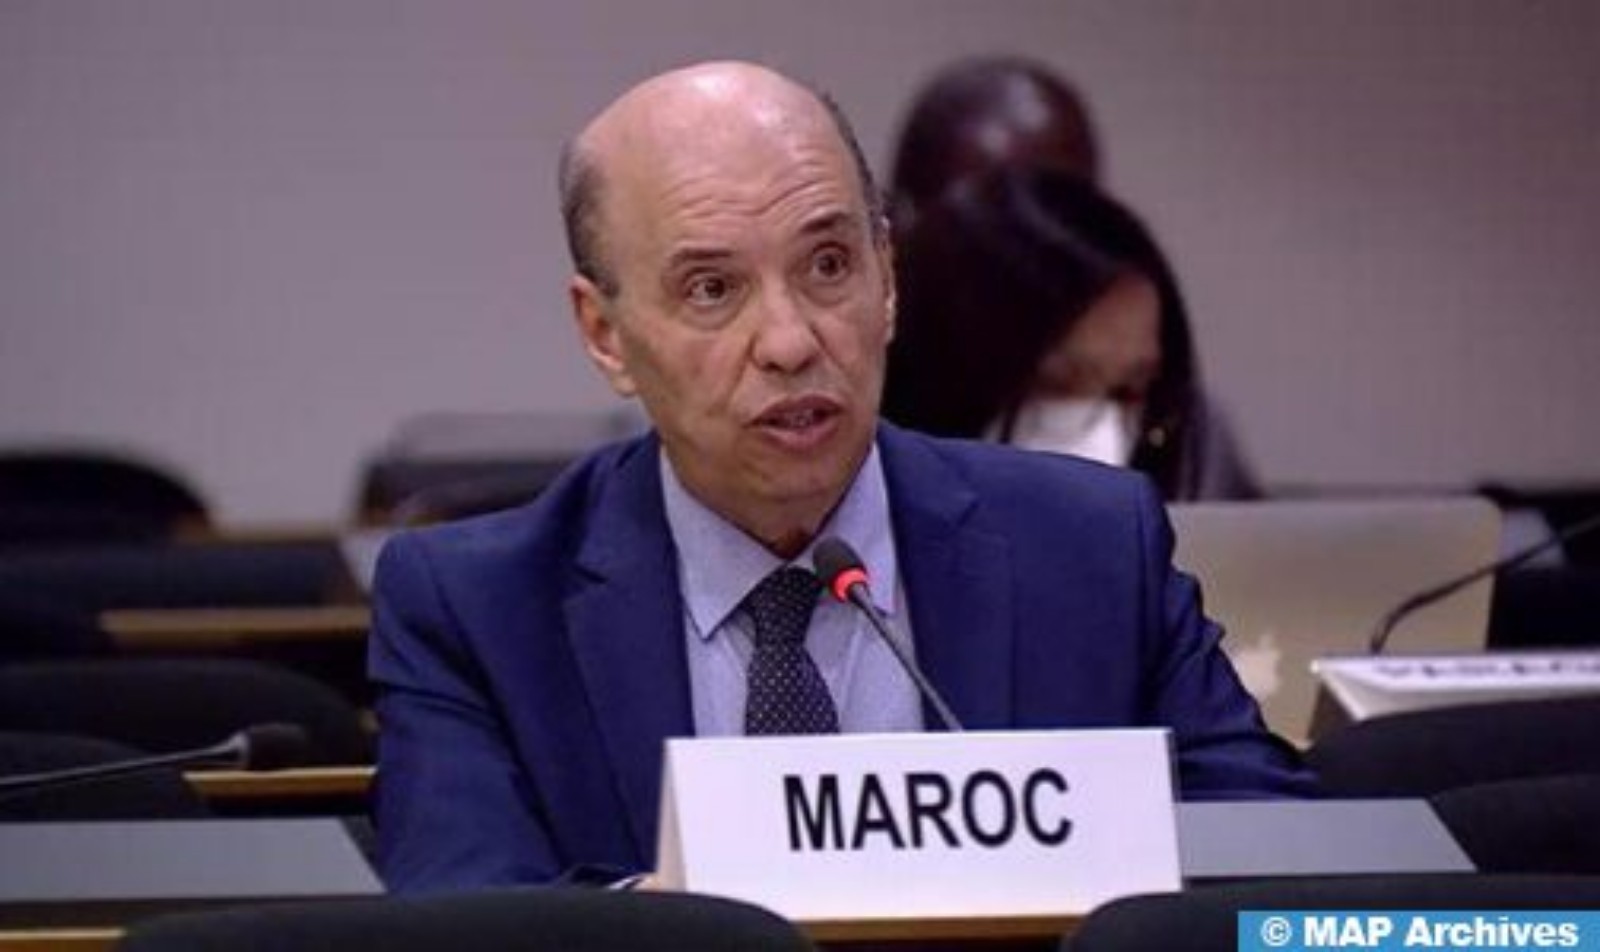 تفويت الجزائر لمسؤوليتها تجاه مخيمات تندوف إلى جماعة انفصالية مسلحة وضعية غير مسبوقة في القانون الدولي (سفير)